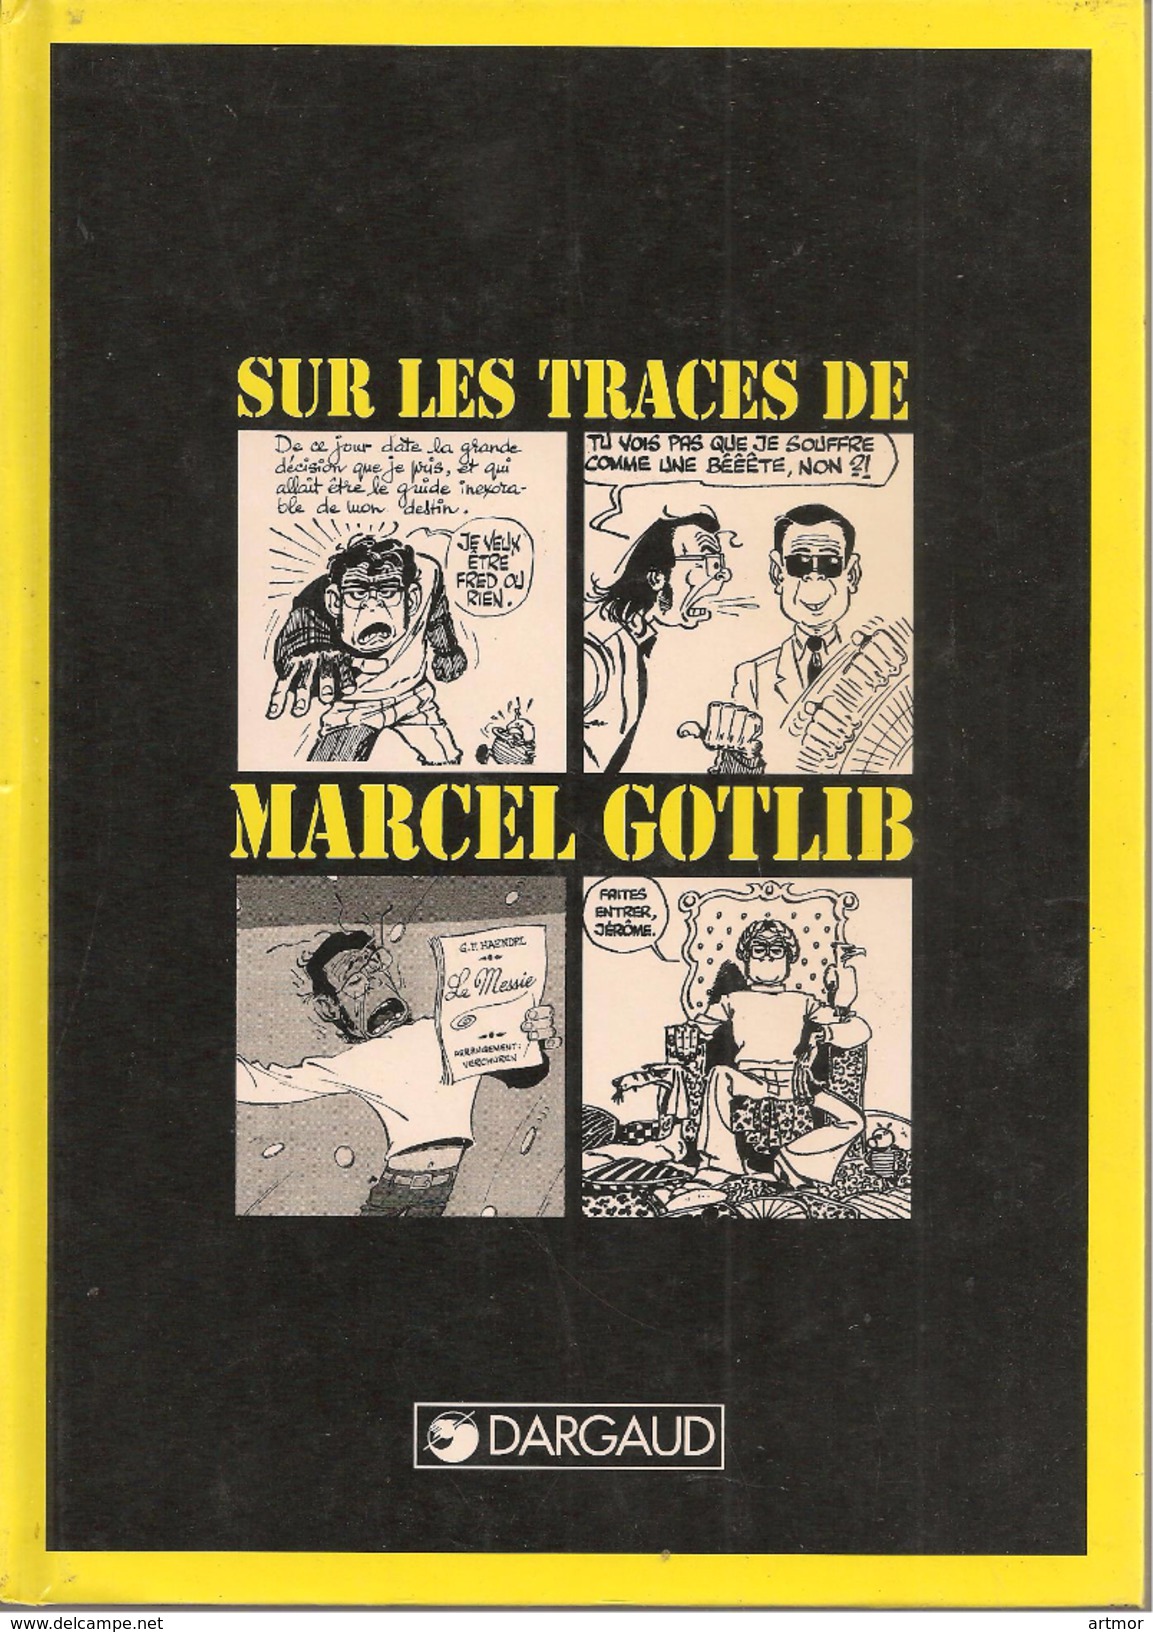 FREMION - SUR LES TRACES DE MARCEL GOTLIB - DARGAUD 1992 - Gotlib